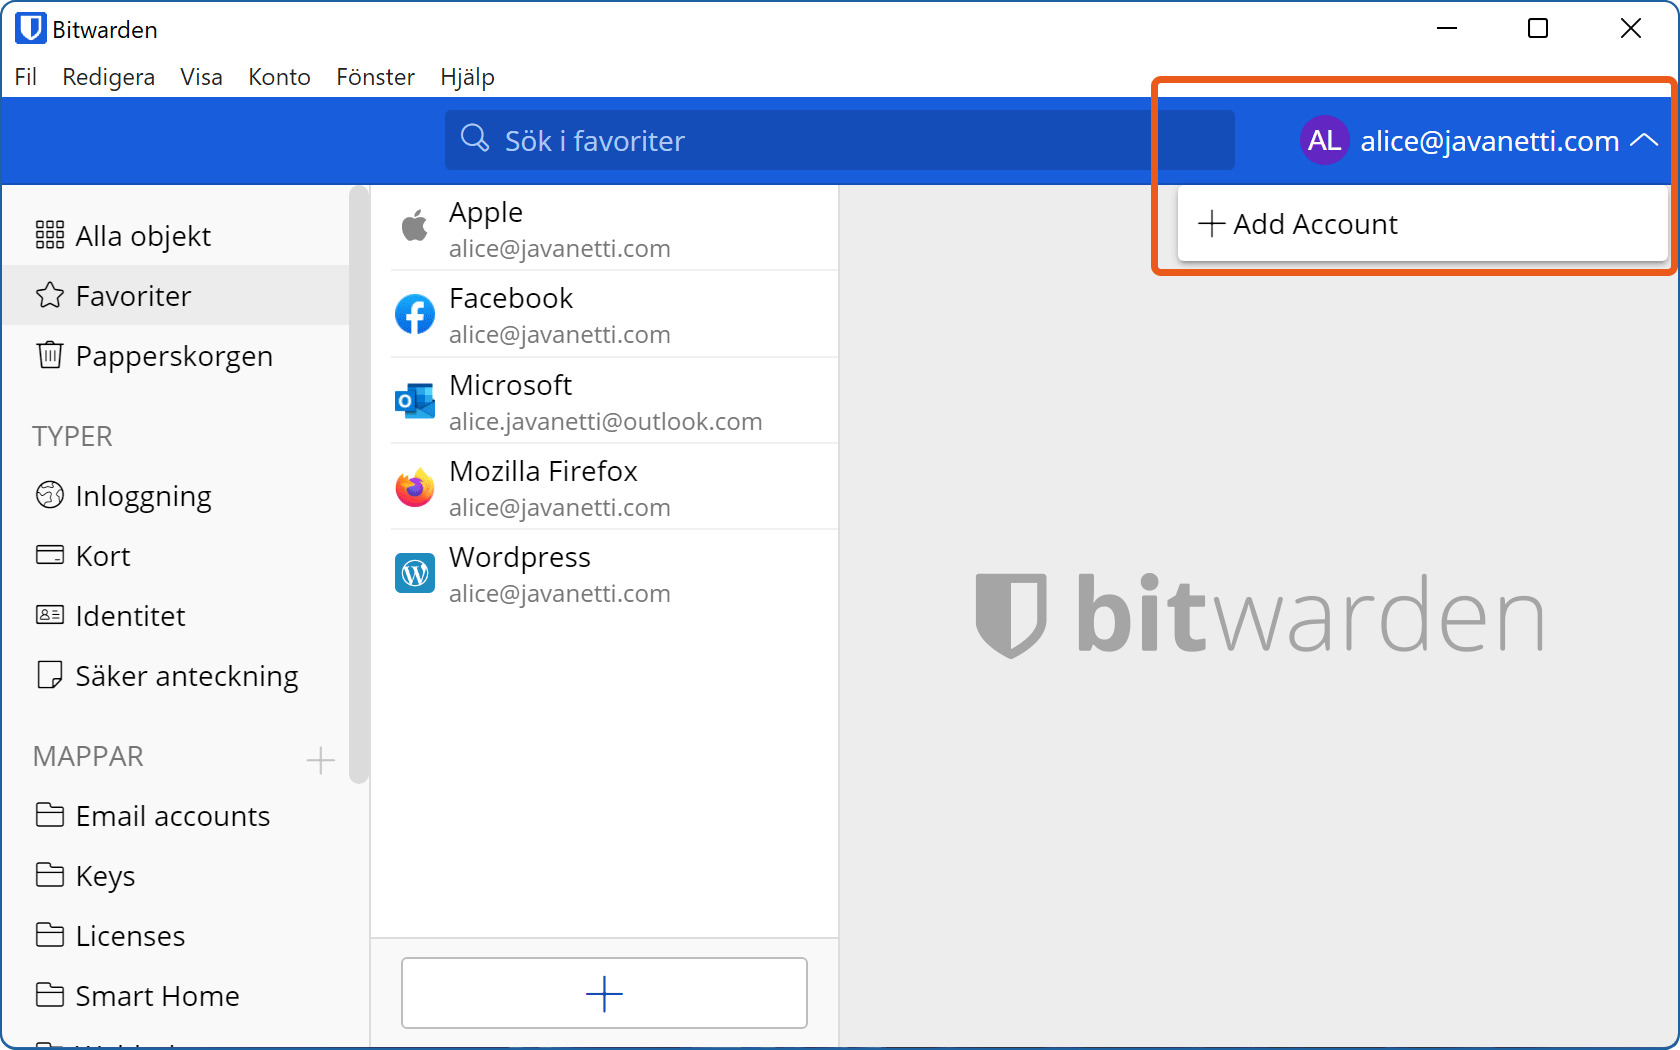 Bitwardens skrivbordsapp visar menyalternativet för att lägga till ytterligare ett Bitwarden-konto.